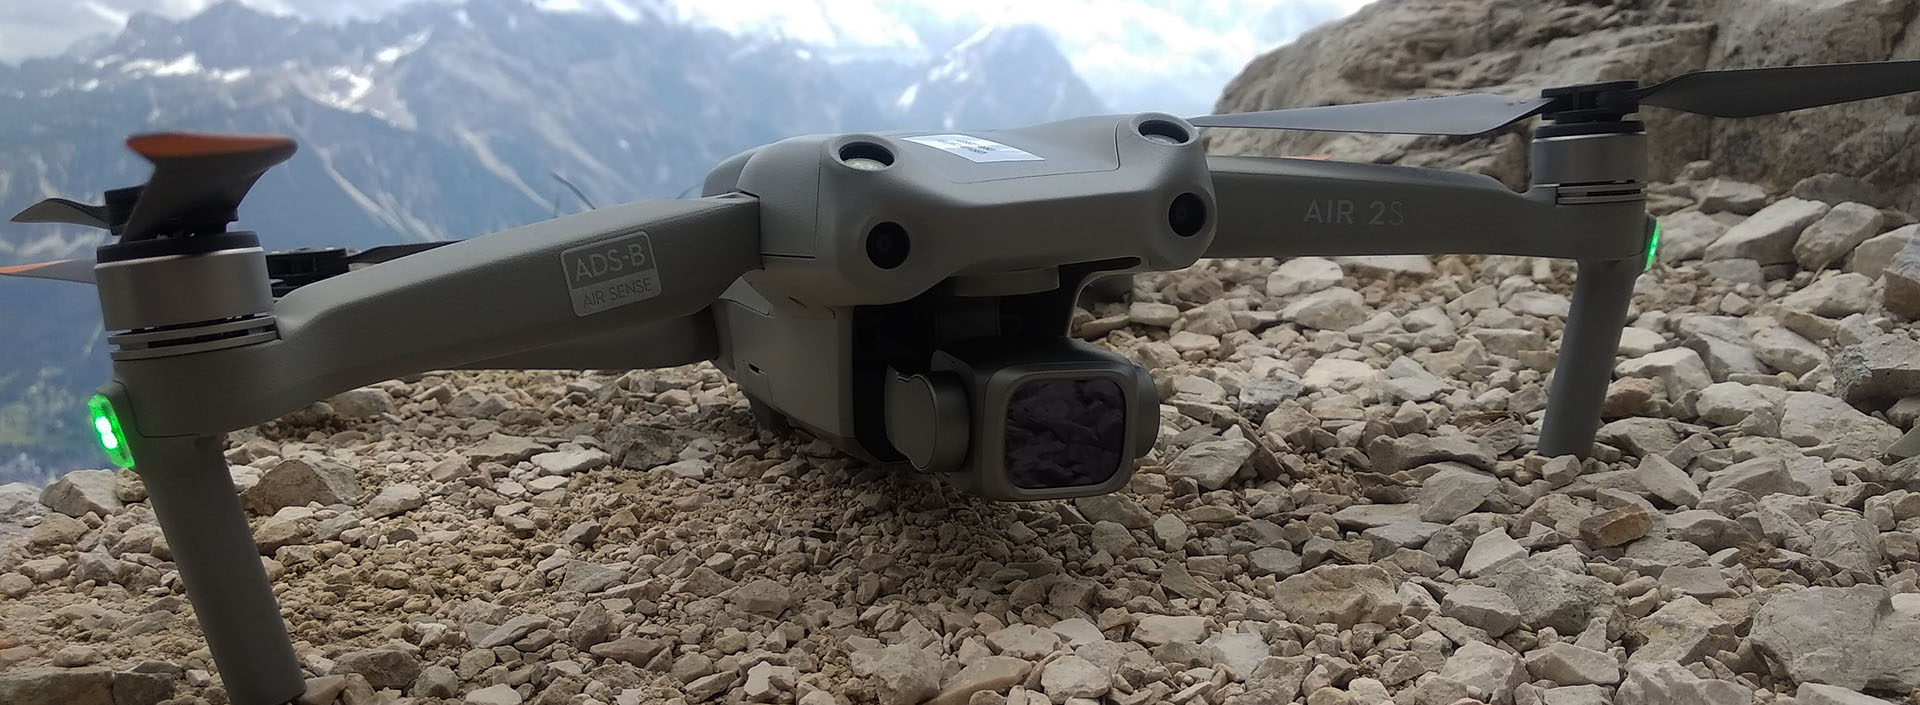 dron w dolomitach